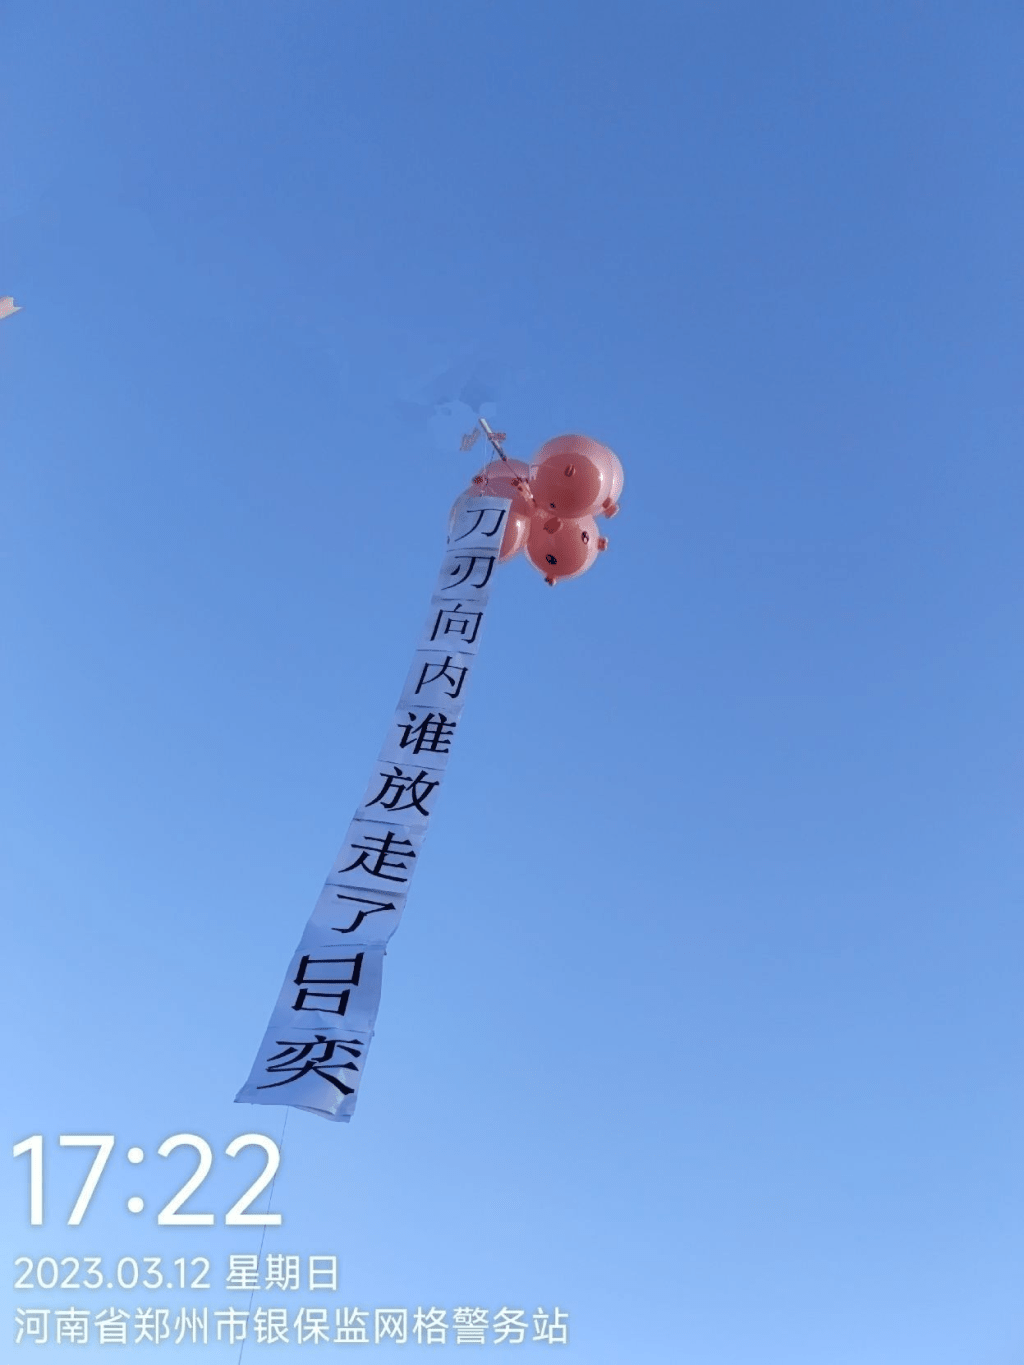 网上图片显示，河南村镇银行事件受害储户在气球上挂上抗议字句的布条。